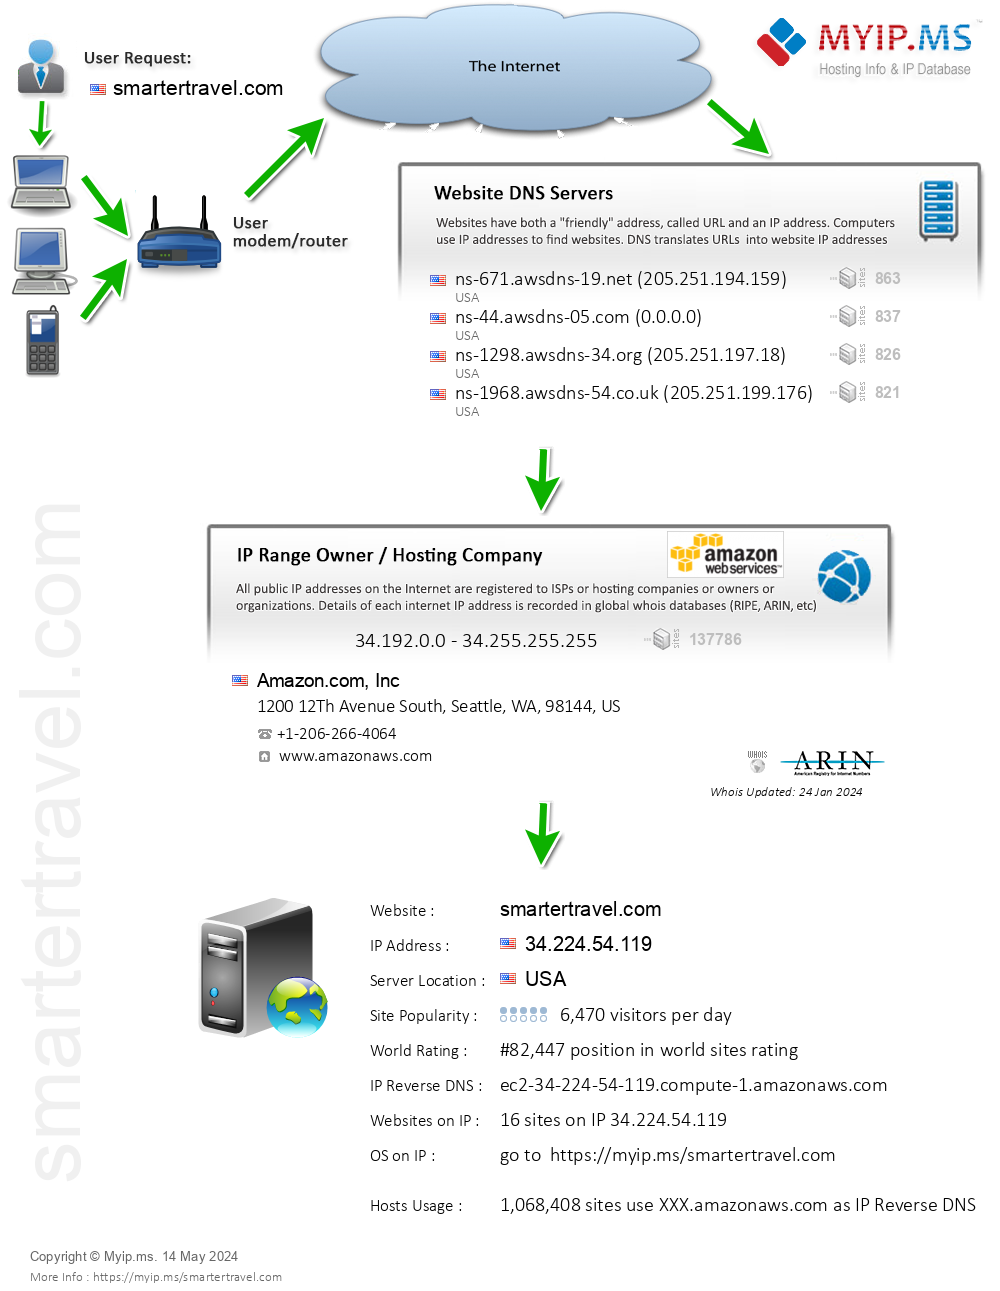 Smartertravel.com - Website Hosting Visual IP Diagram